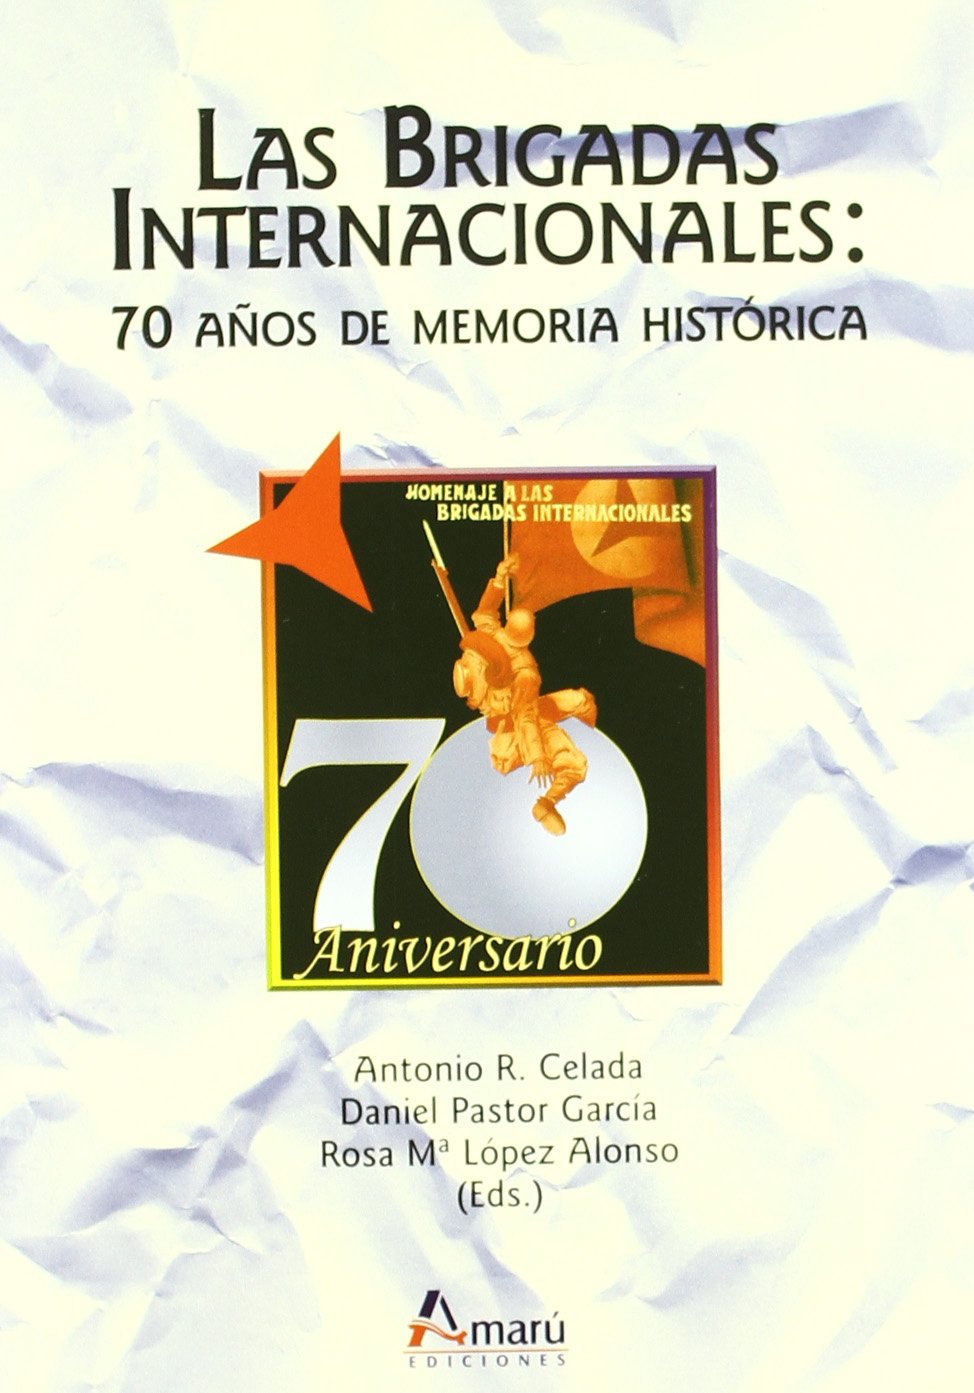 Imagen de portada del libro Las Brigadas Internacionales